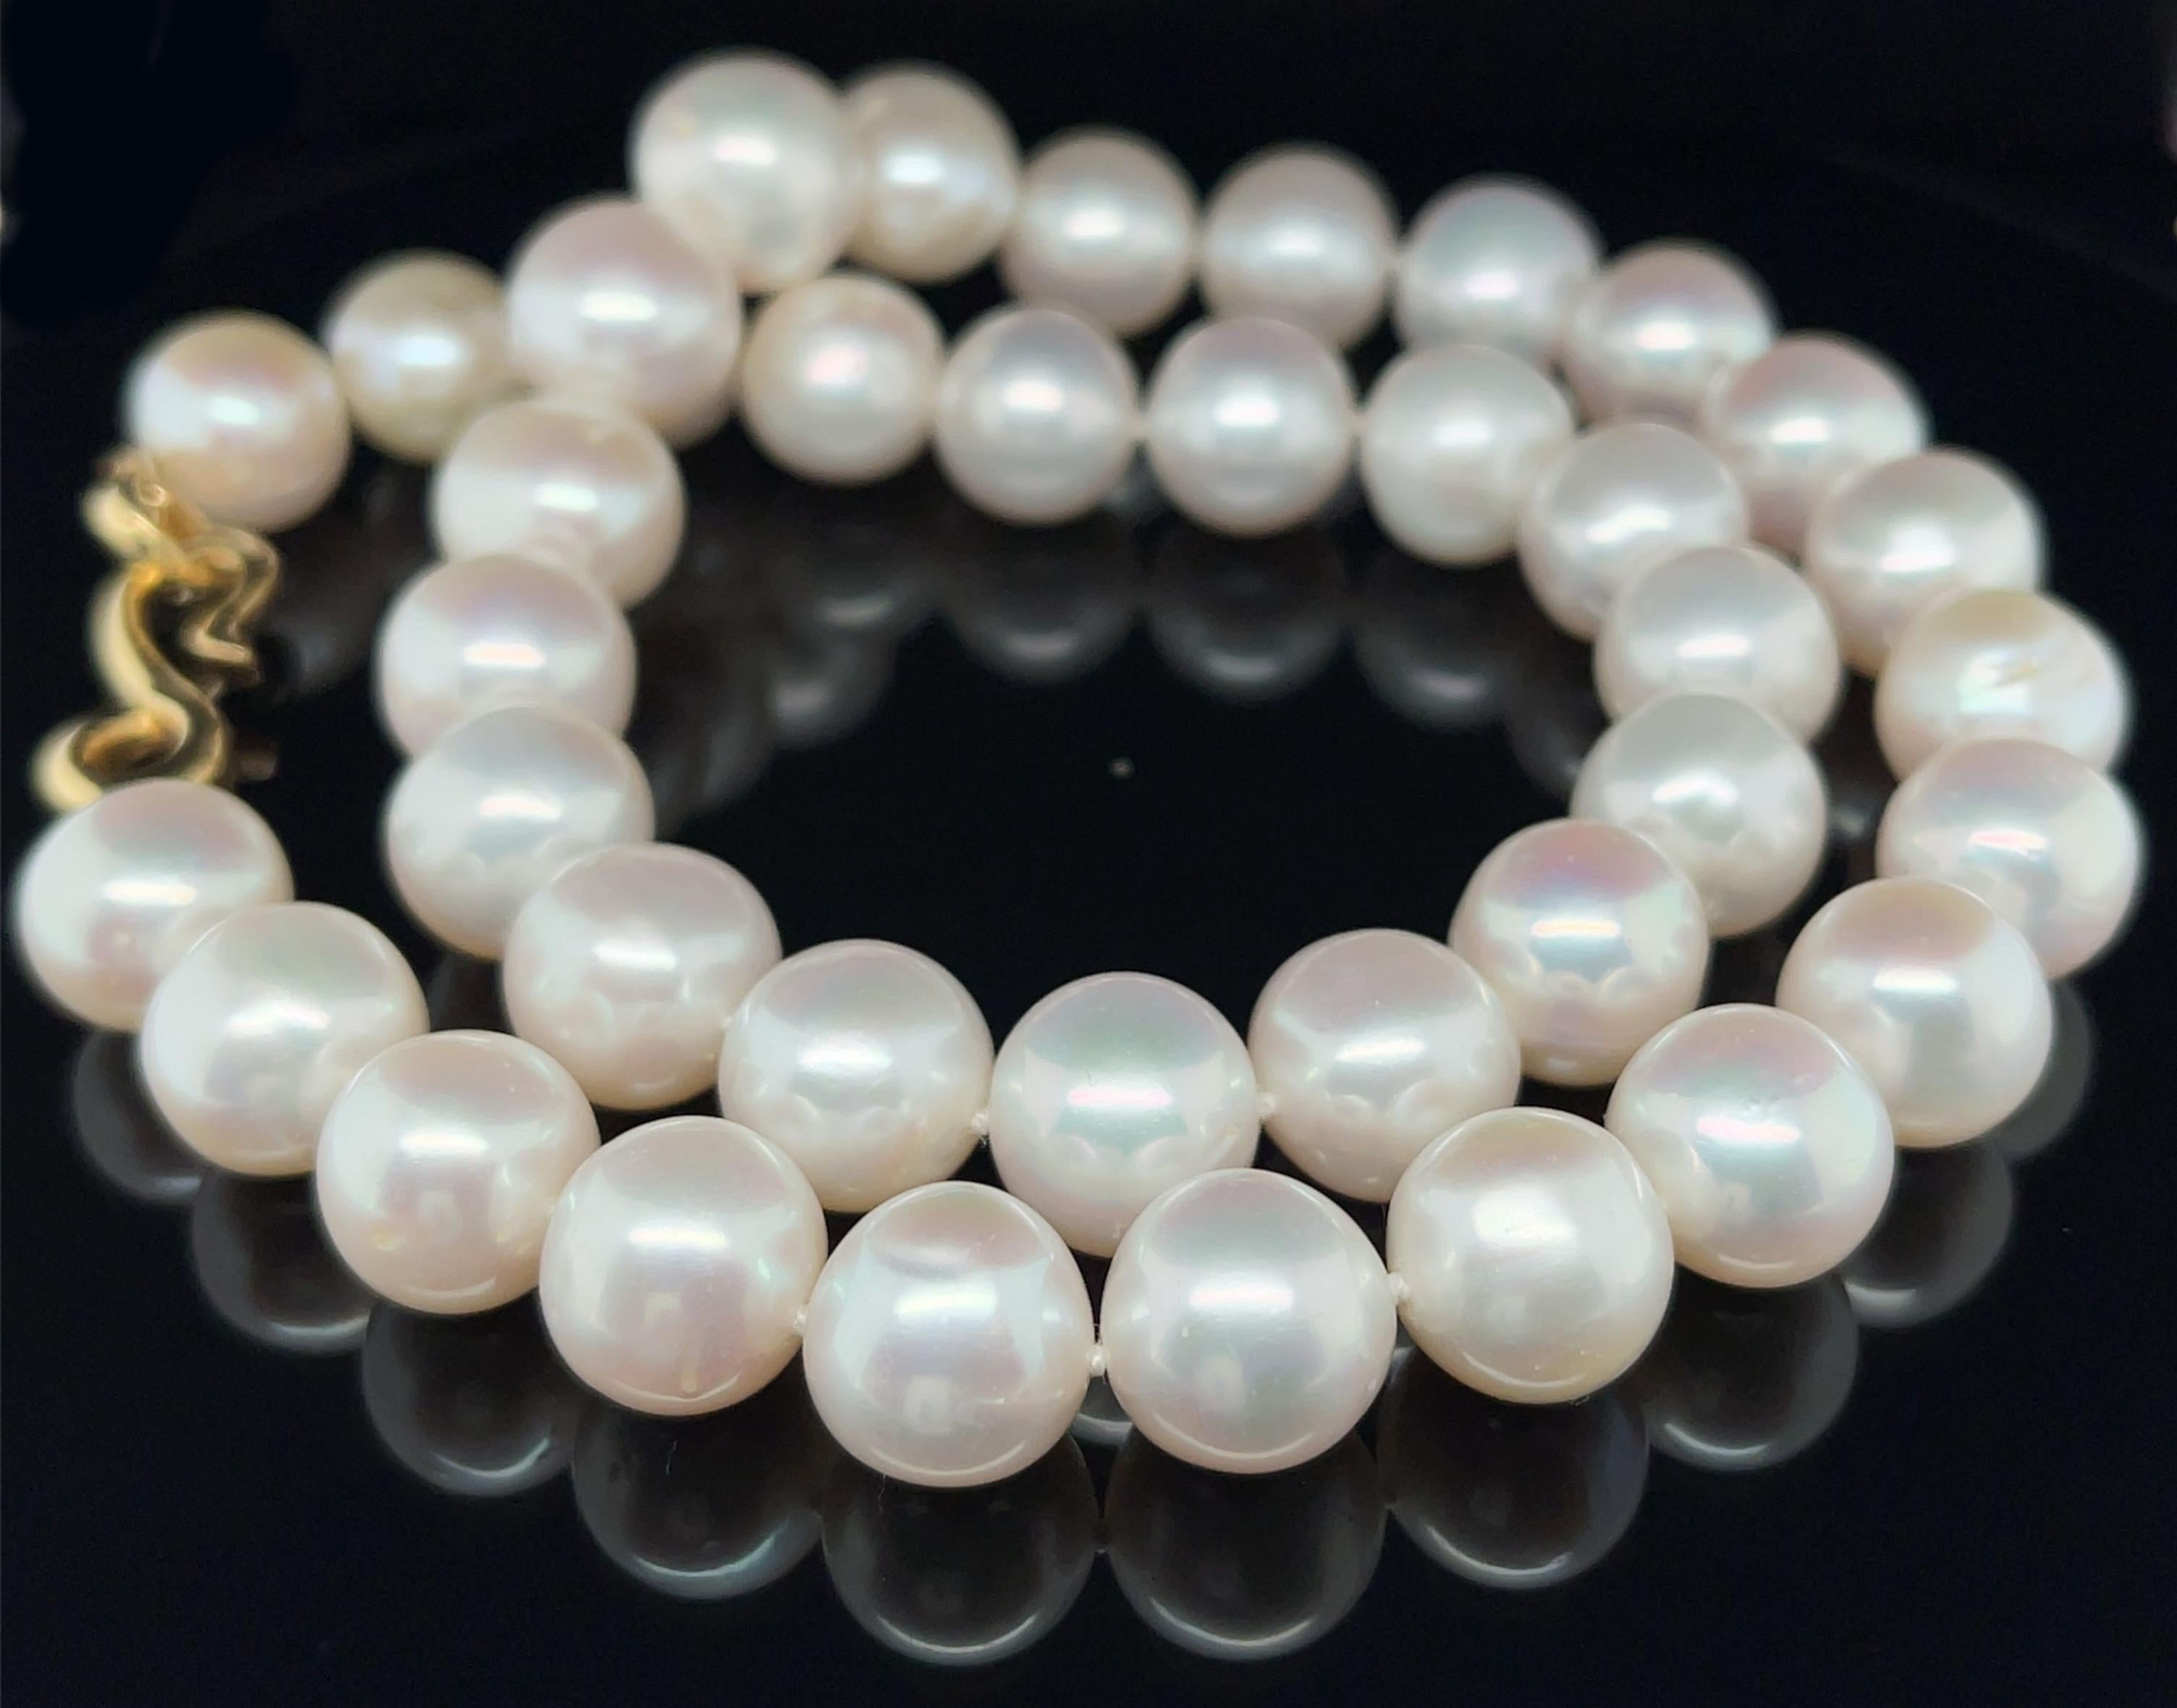 Ce magnifique rang de perles blanches d'eau douce donne l'impression d'être luxueux à un prix abordable ! Composé de 38 perles de forme légèrement ovale et d'un magnifique lustre, ce cordon mesure 18 pouces de long et se termine par un fermoir en